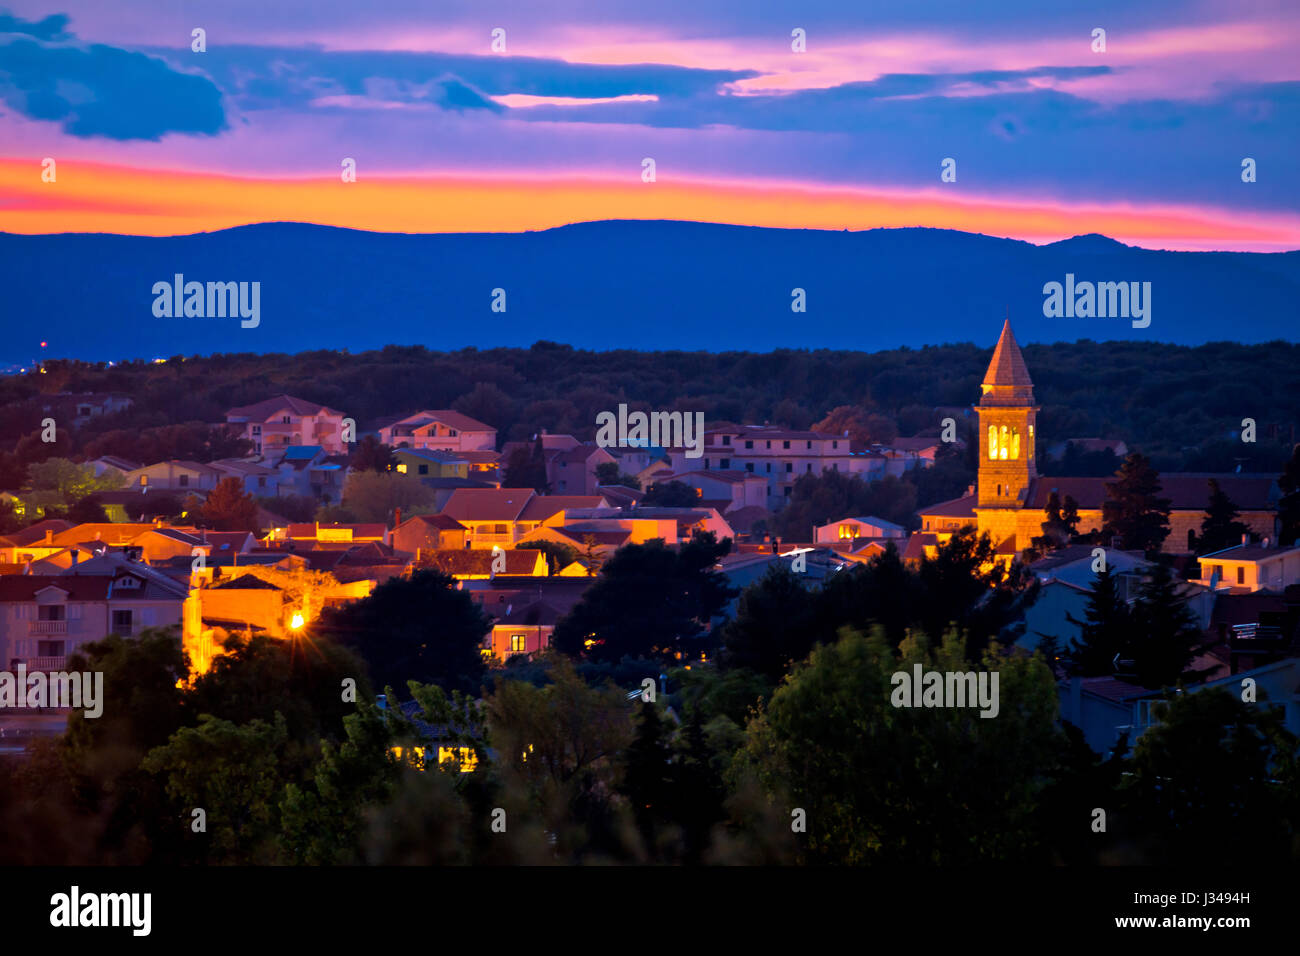 Adriatische Stadt Pakostane Abend Blick, Archipel von Dalmatien, Kroatien Stockfoto